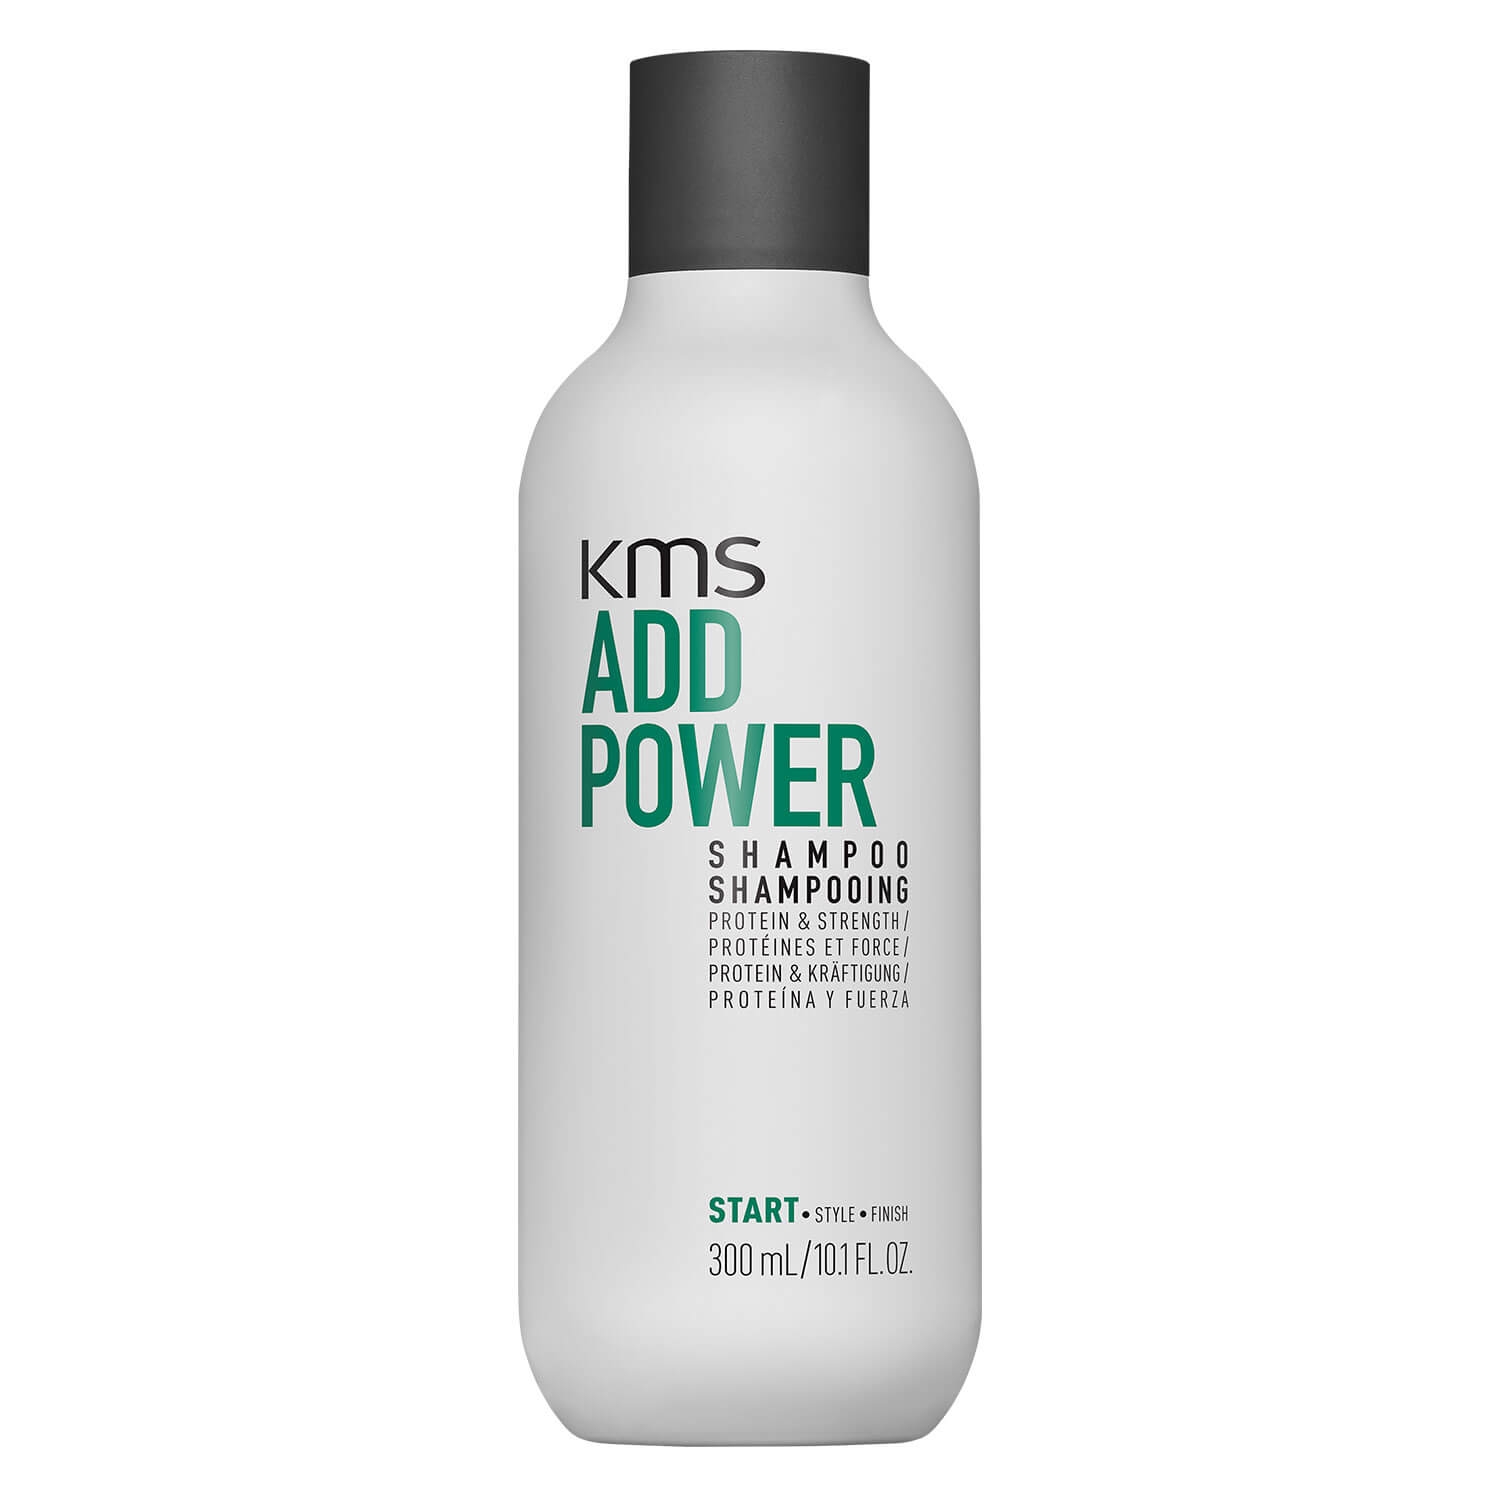 Produktbild von Add Power - Shampoo